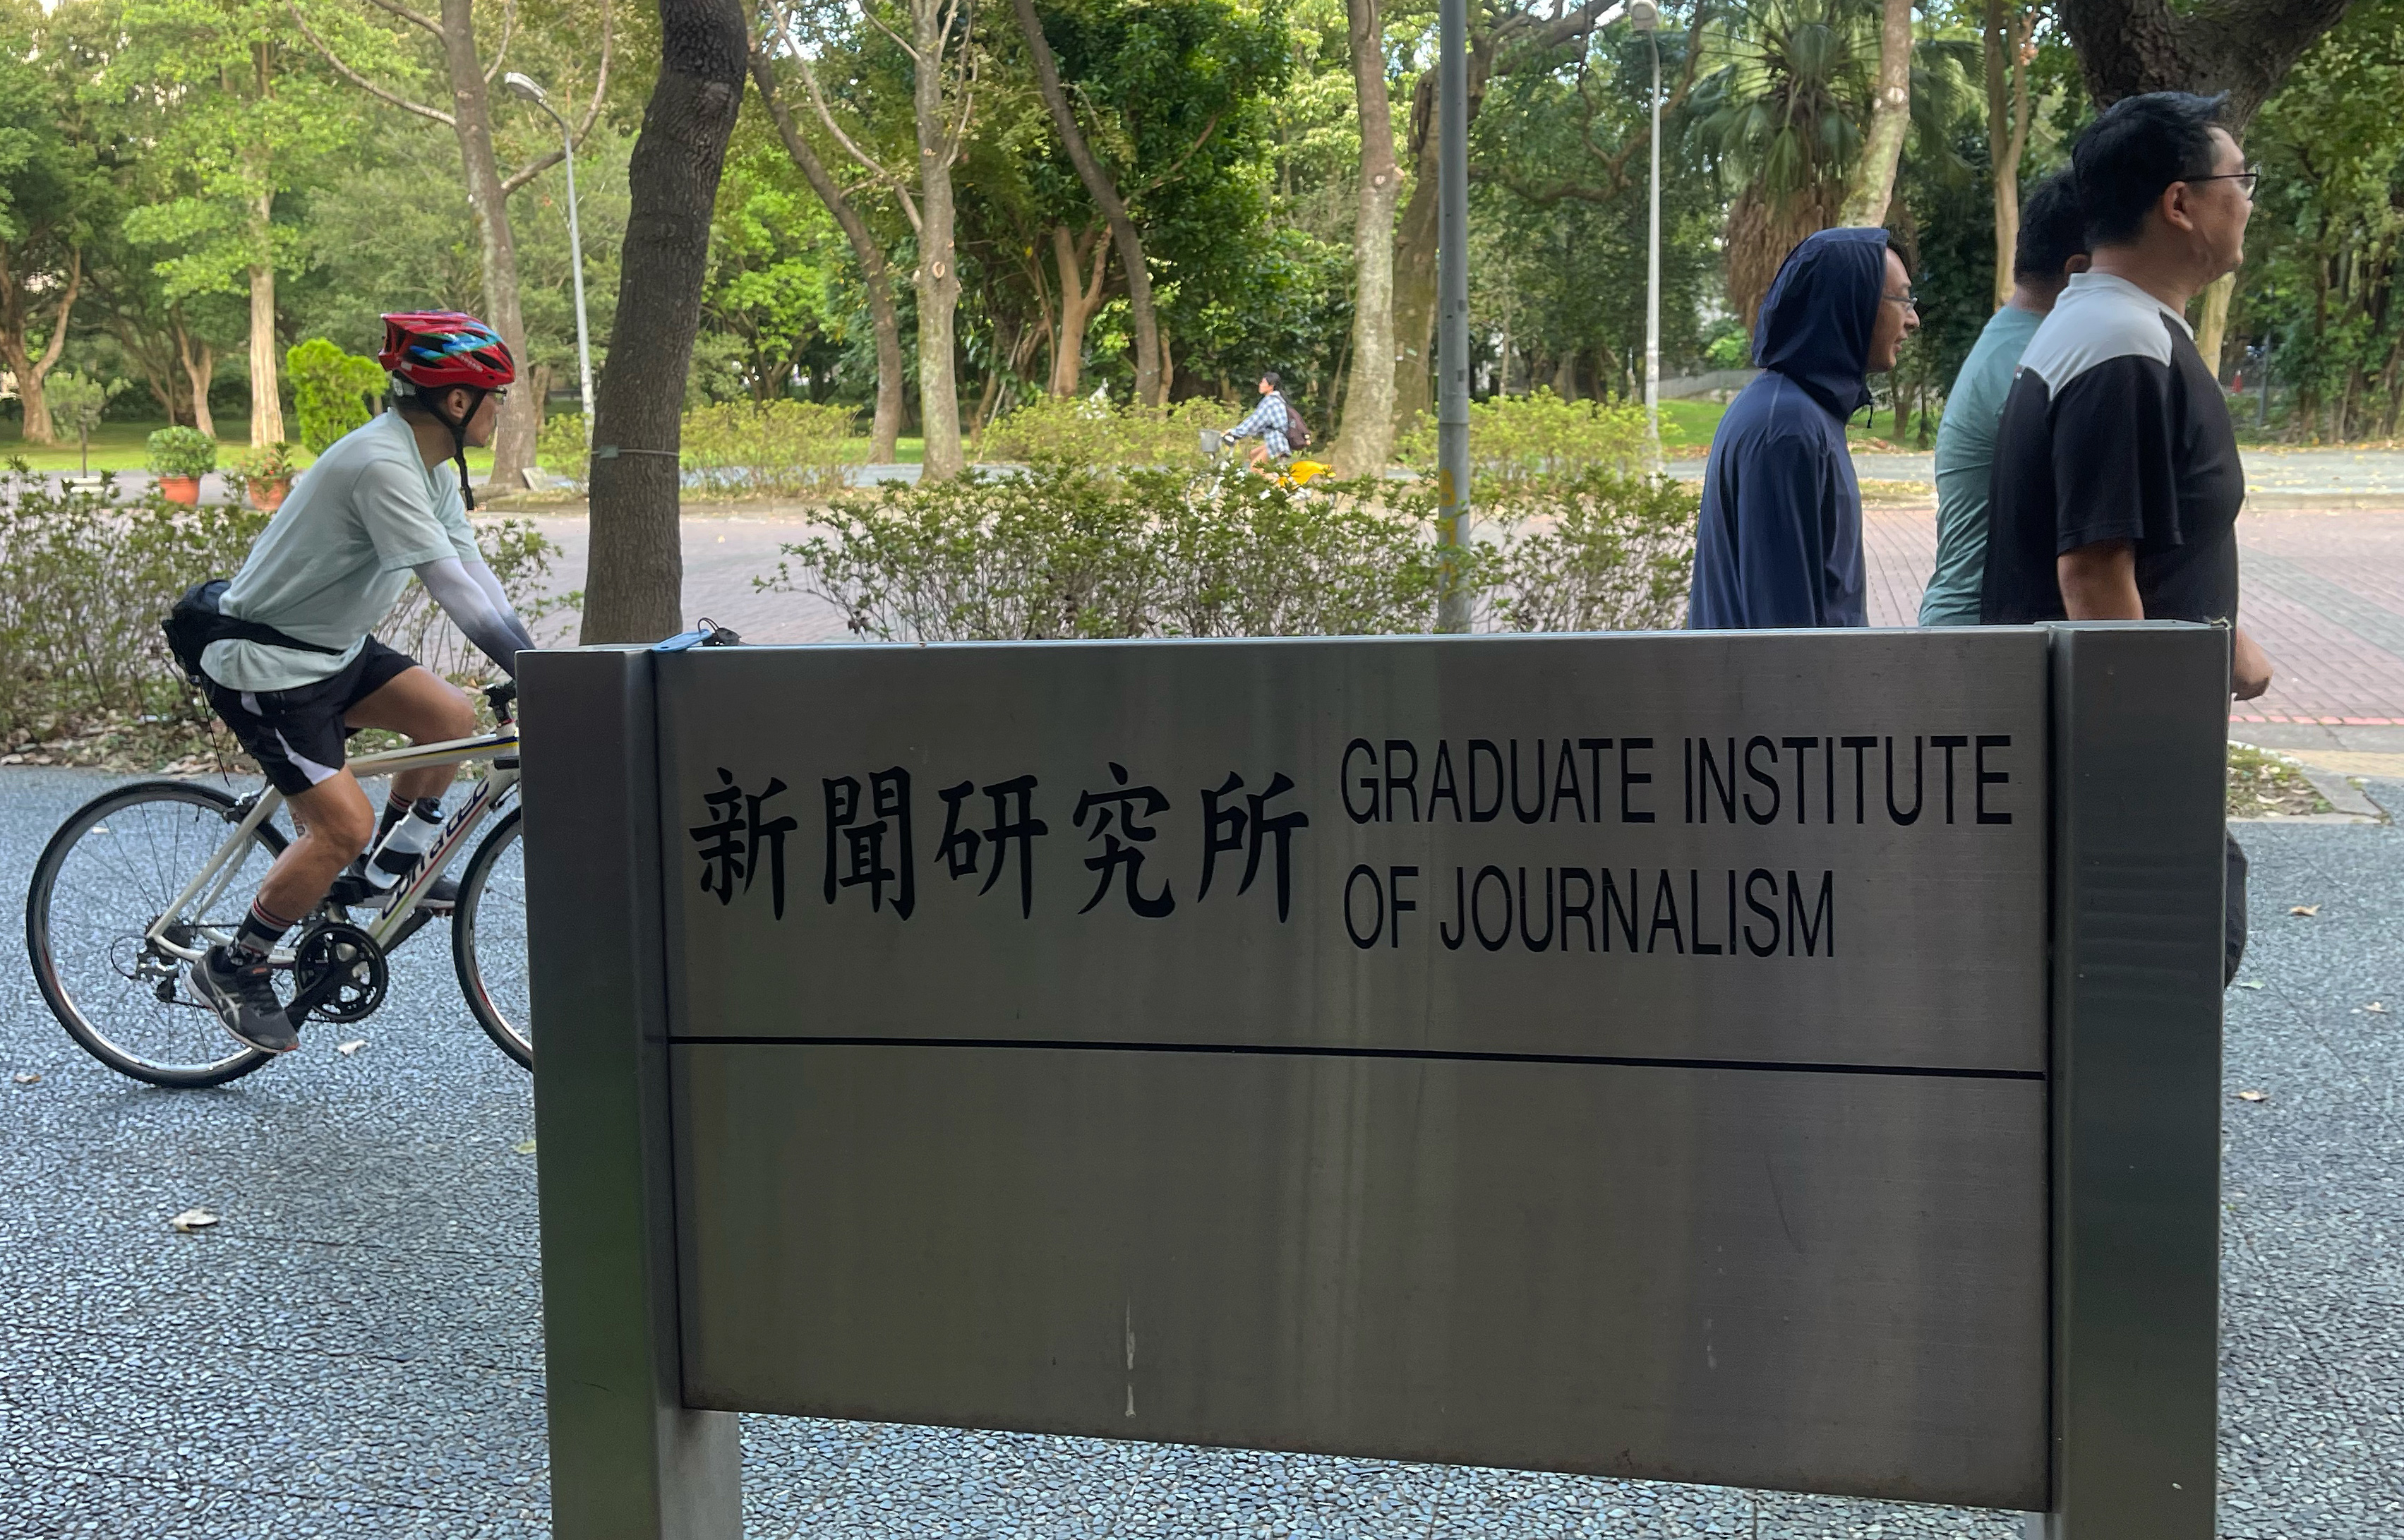 国立台湾大学新闻研究所研拟申设大学部学士班「全球新闻传播学系」，但教师员额不符申设学士班规定，台大校方建议新闻所改设「学位学程」。记者潘俊宏／摄影